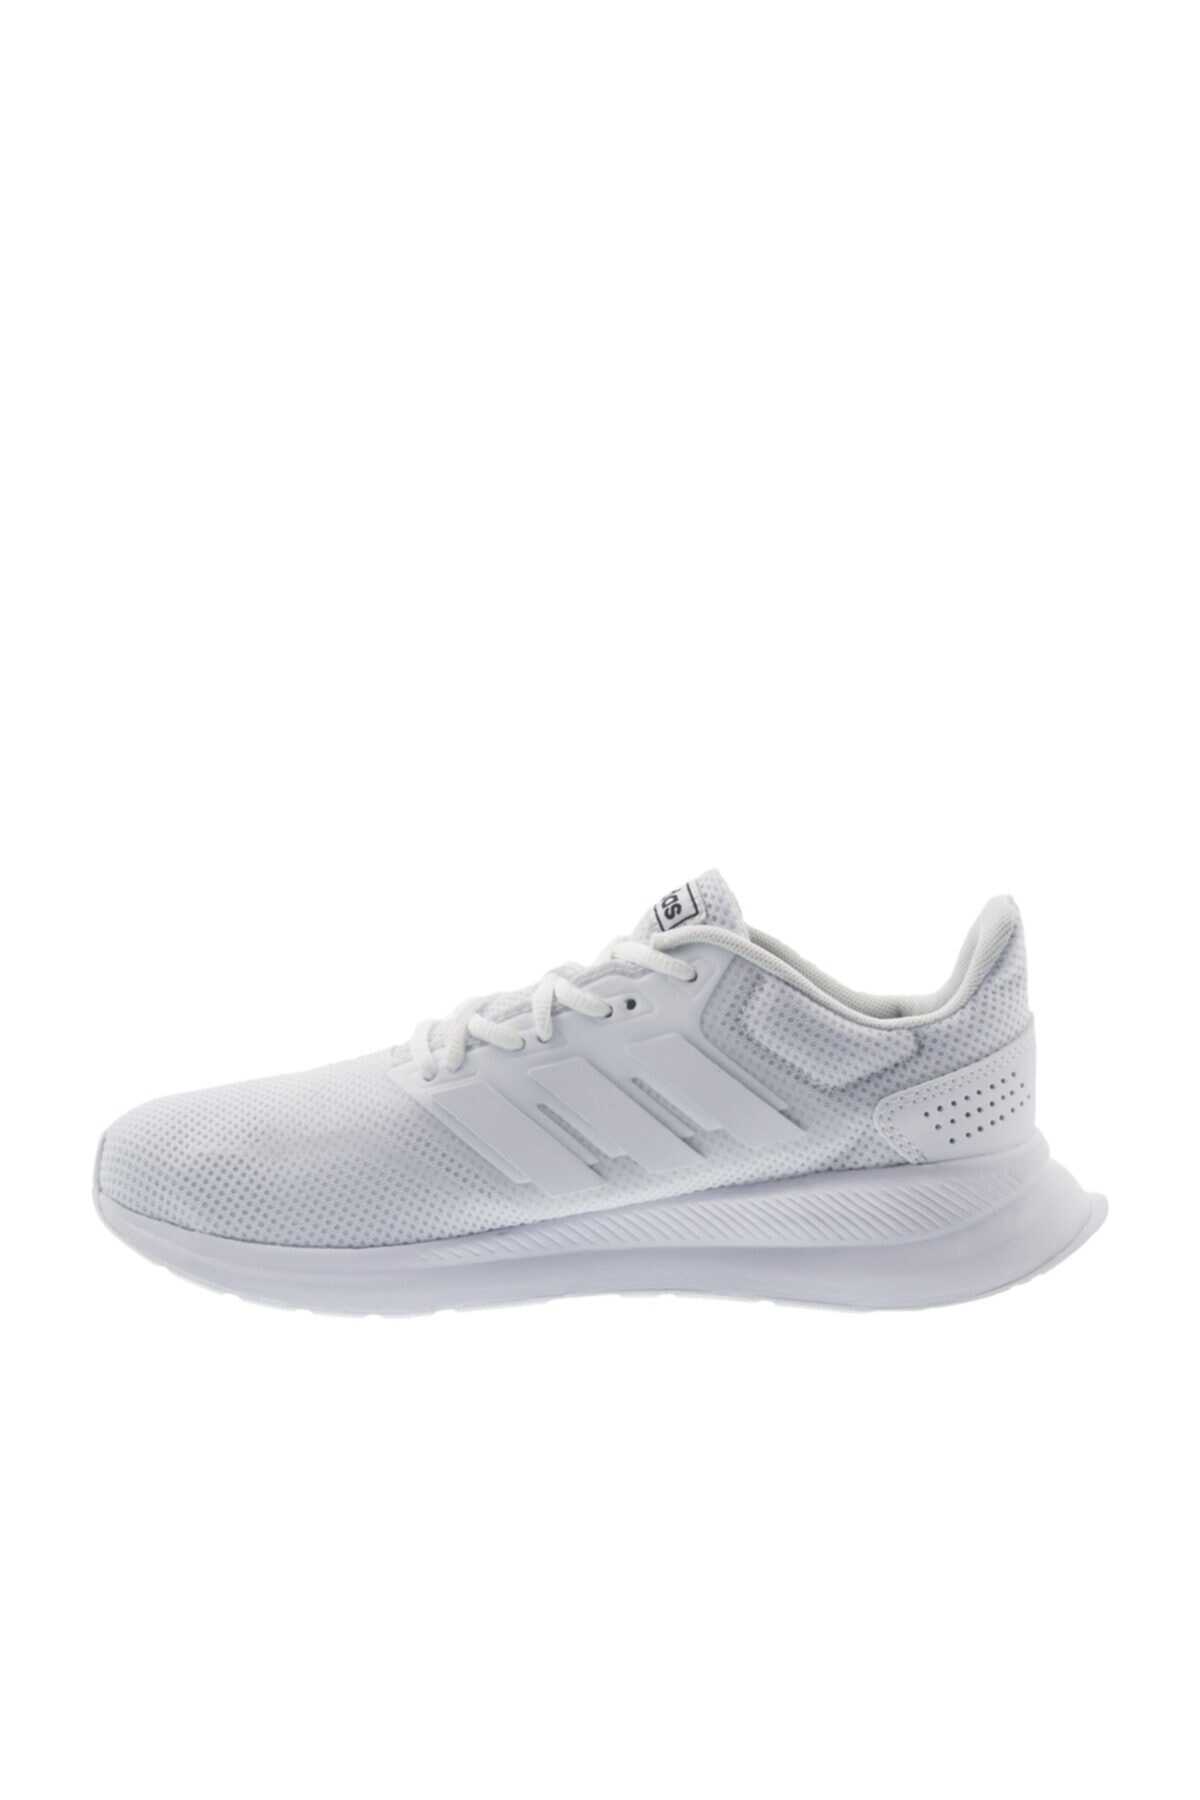 کفش ورزشی مردانه سفید کد G28971 برند adidas 